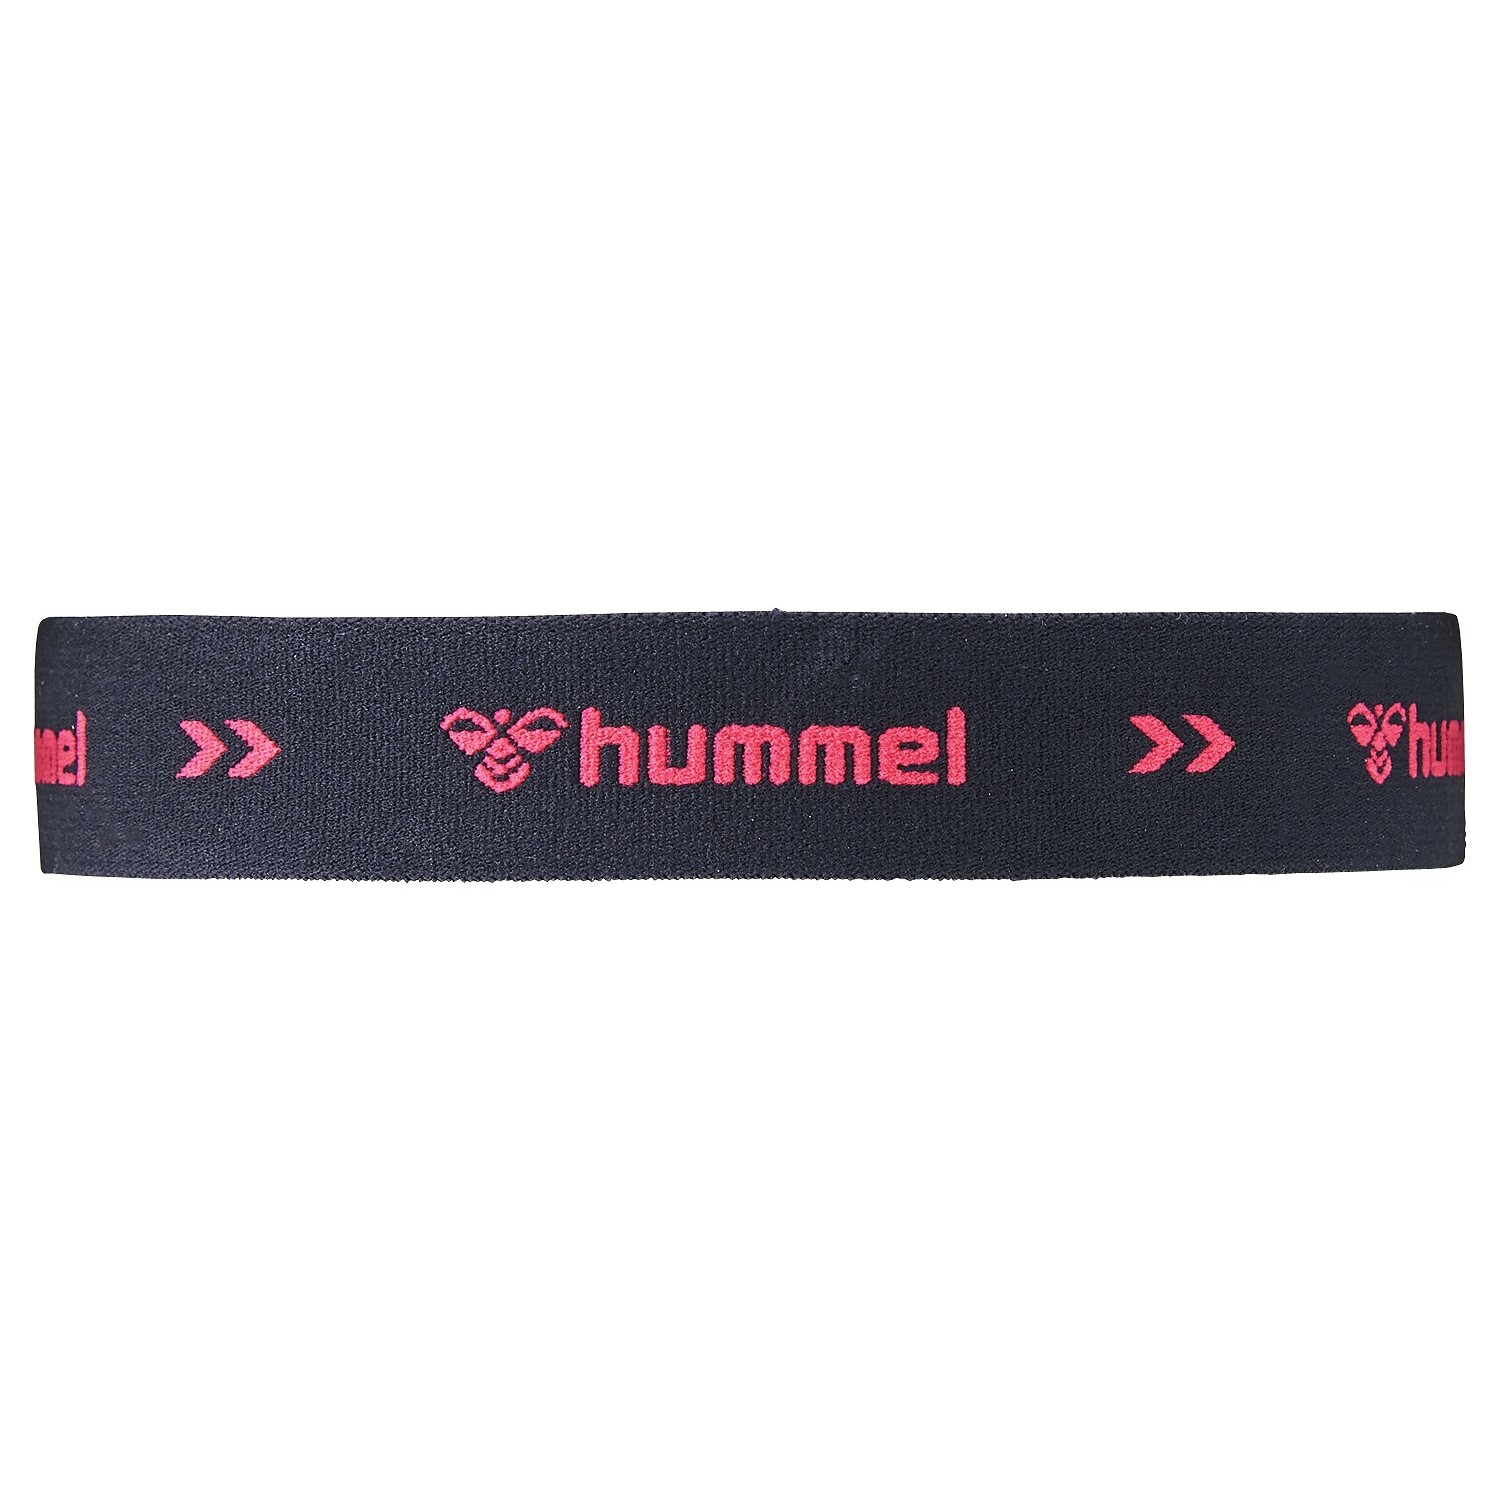 hummel(ヒュンメル)-S ヘアバンド ブラック×ピンク その他